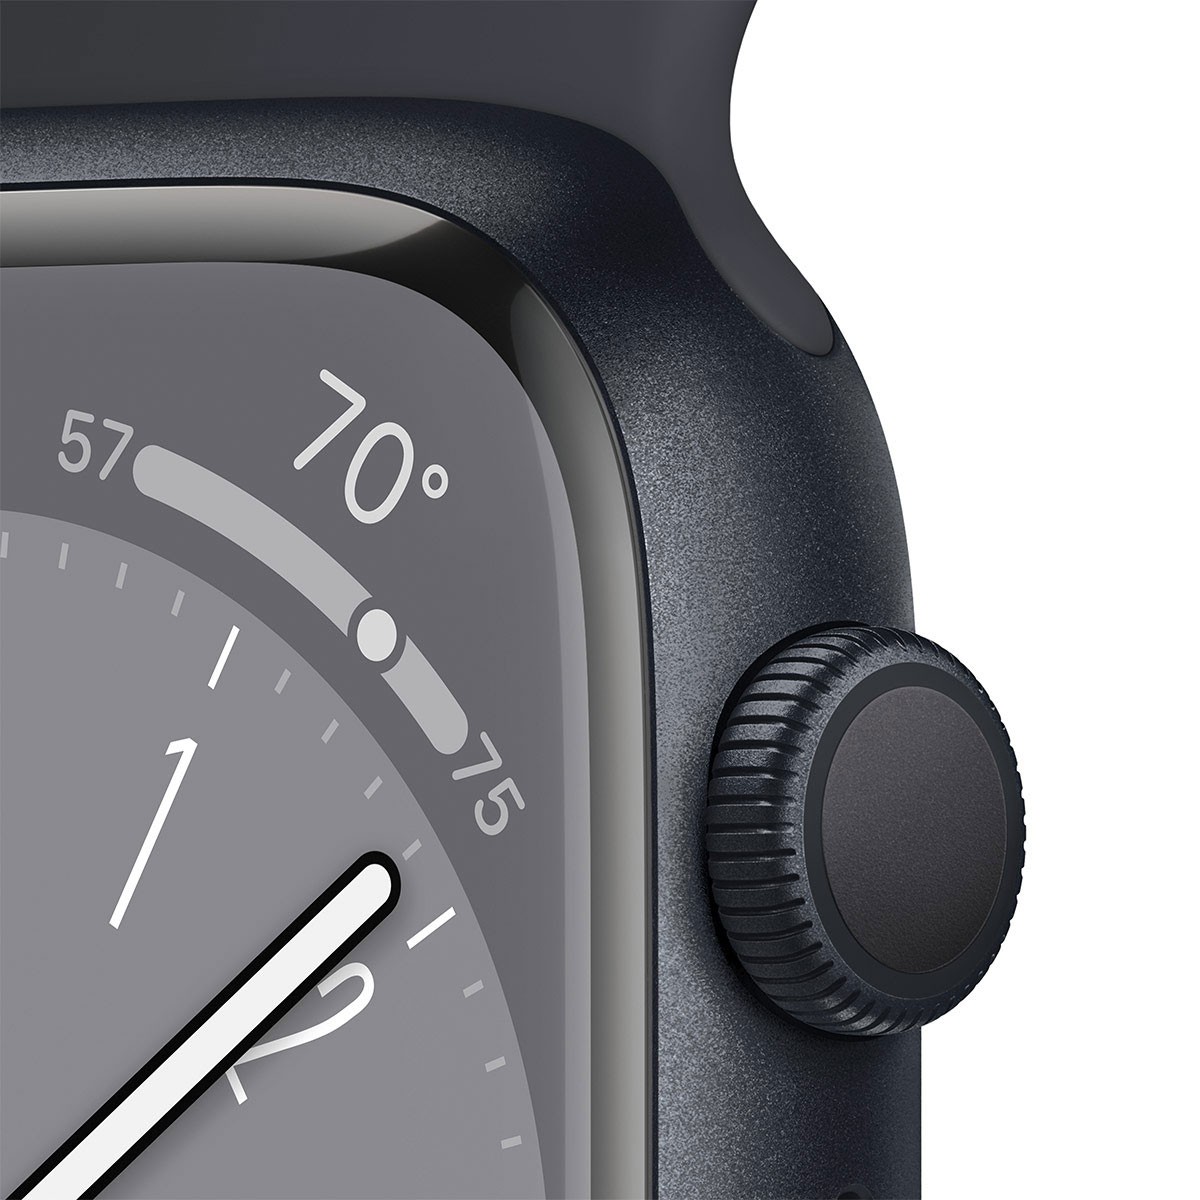 Apple Watch Series  41mm GPS model